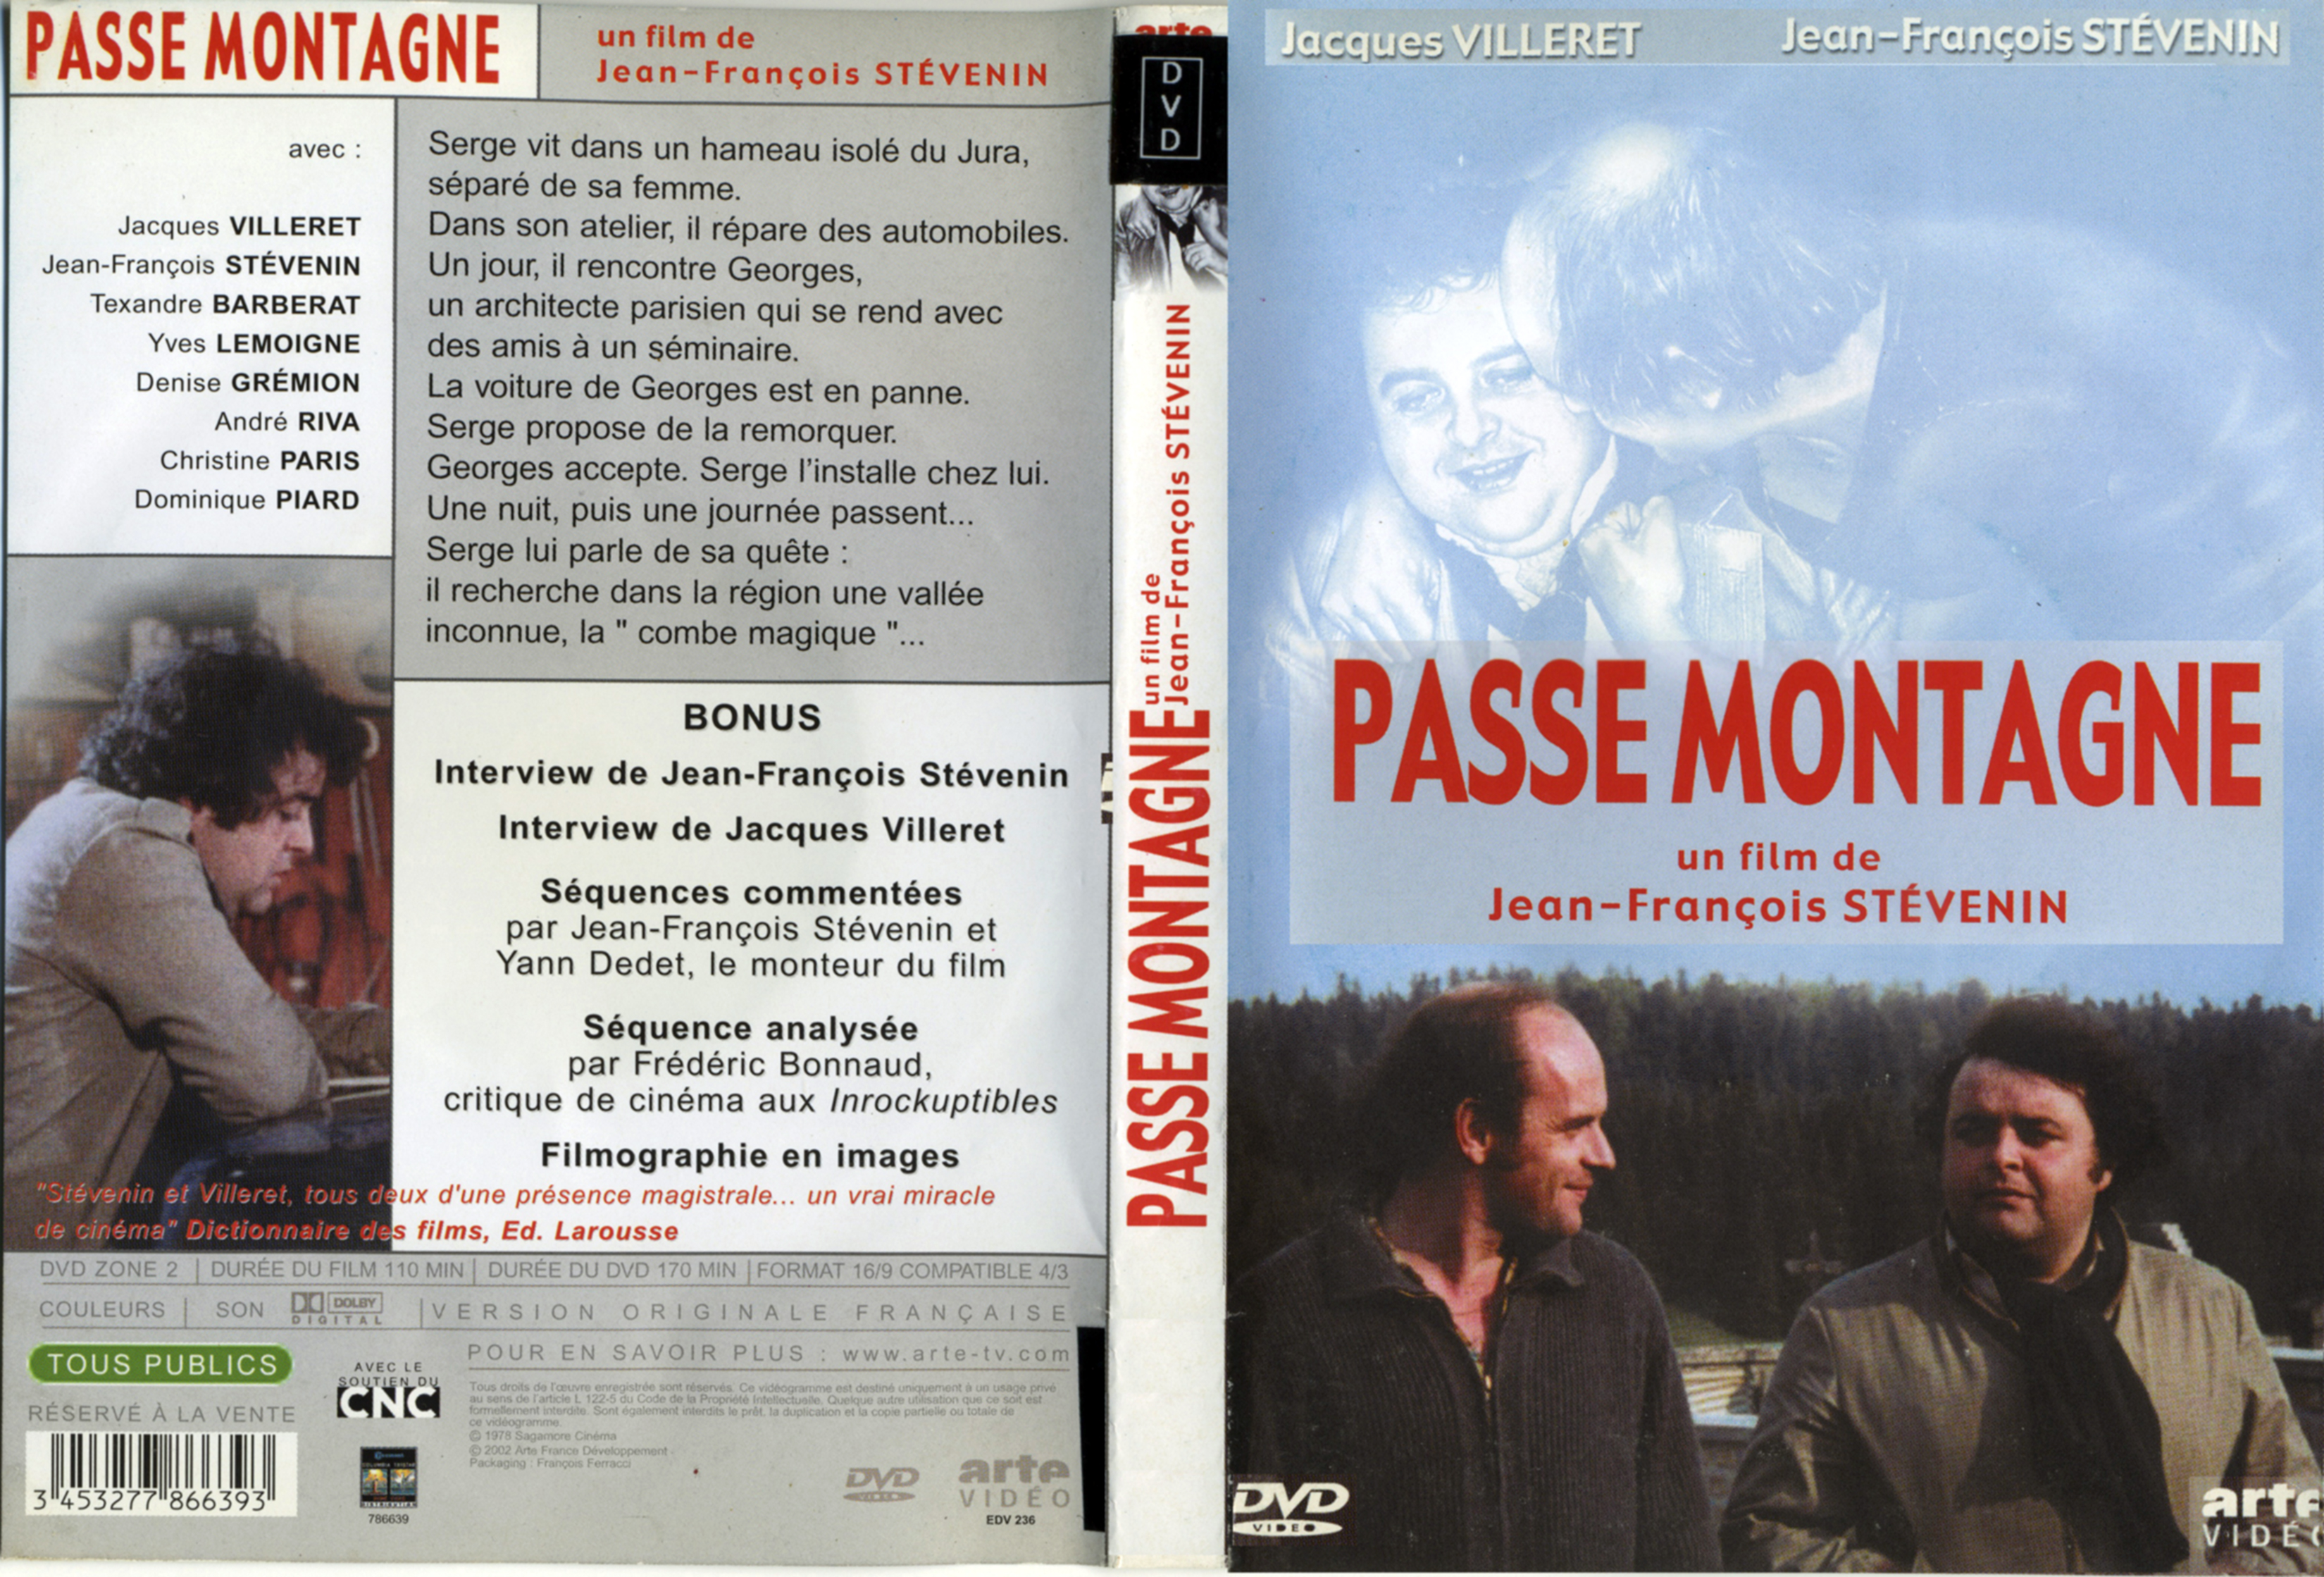 Jaquette DVD Passe montagne